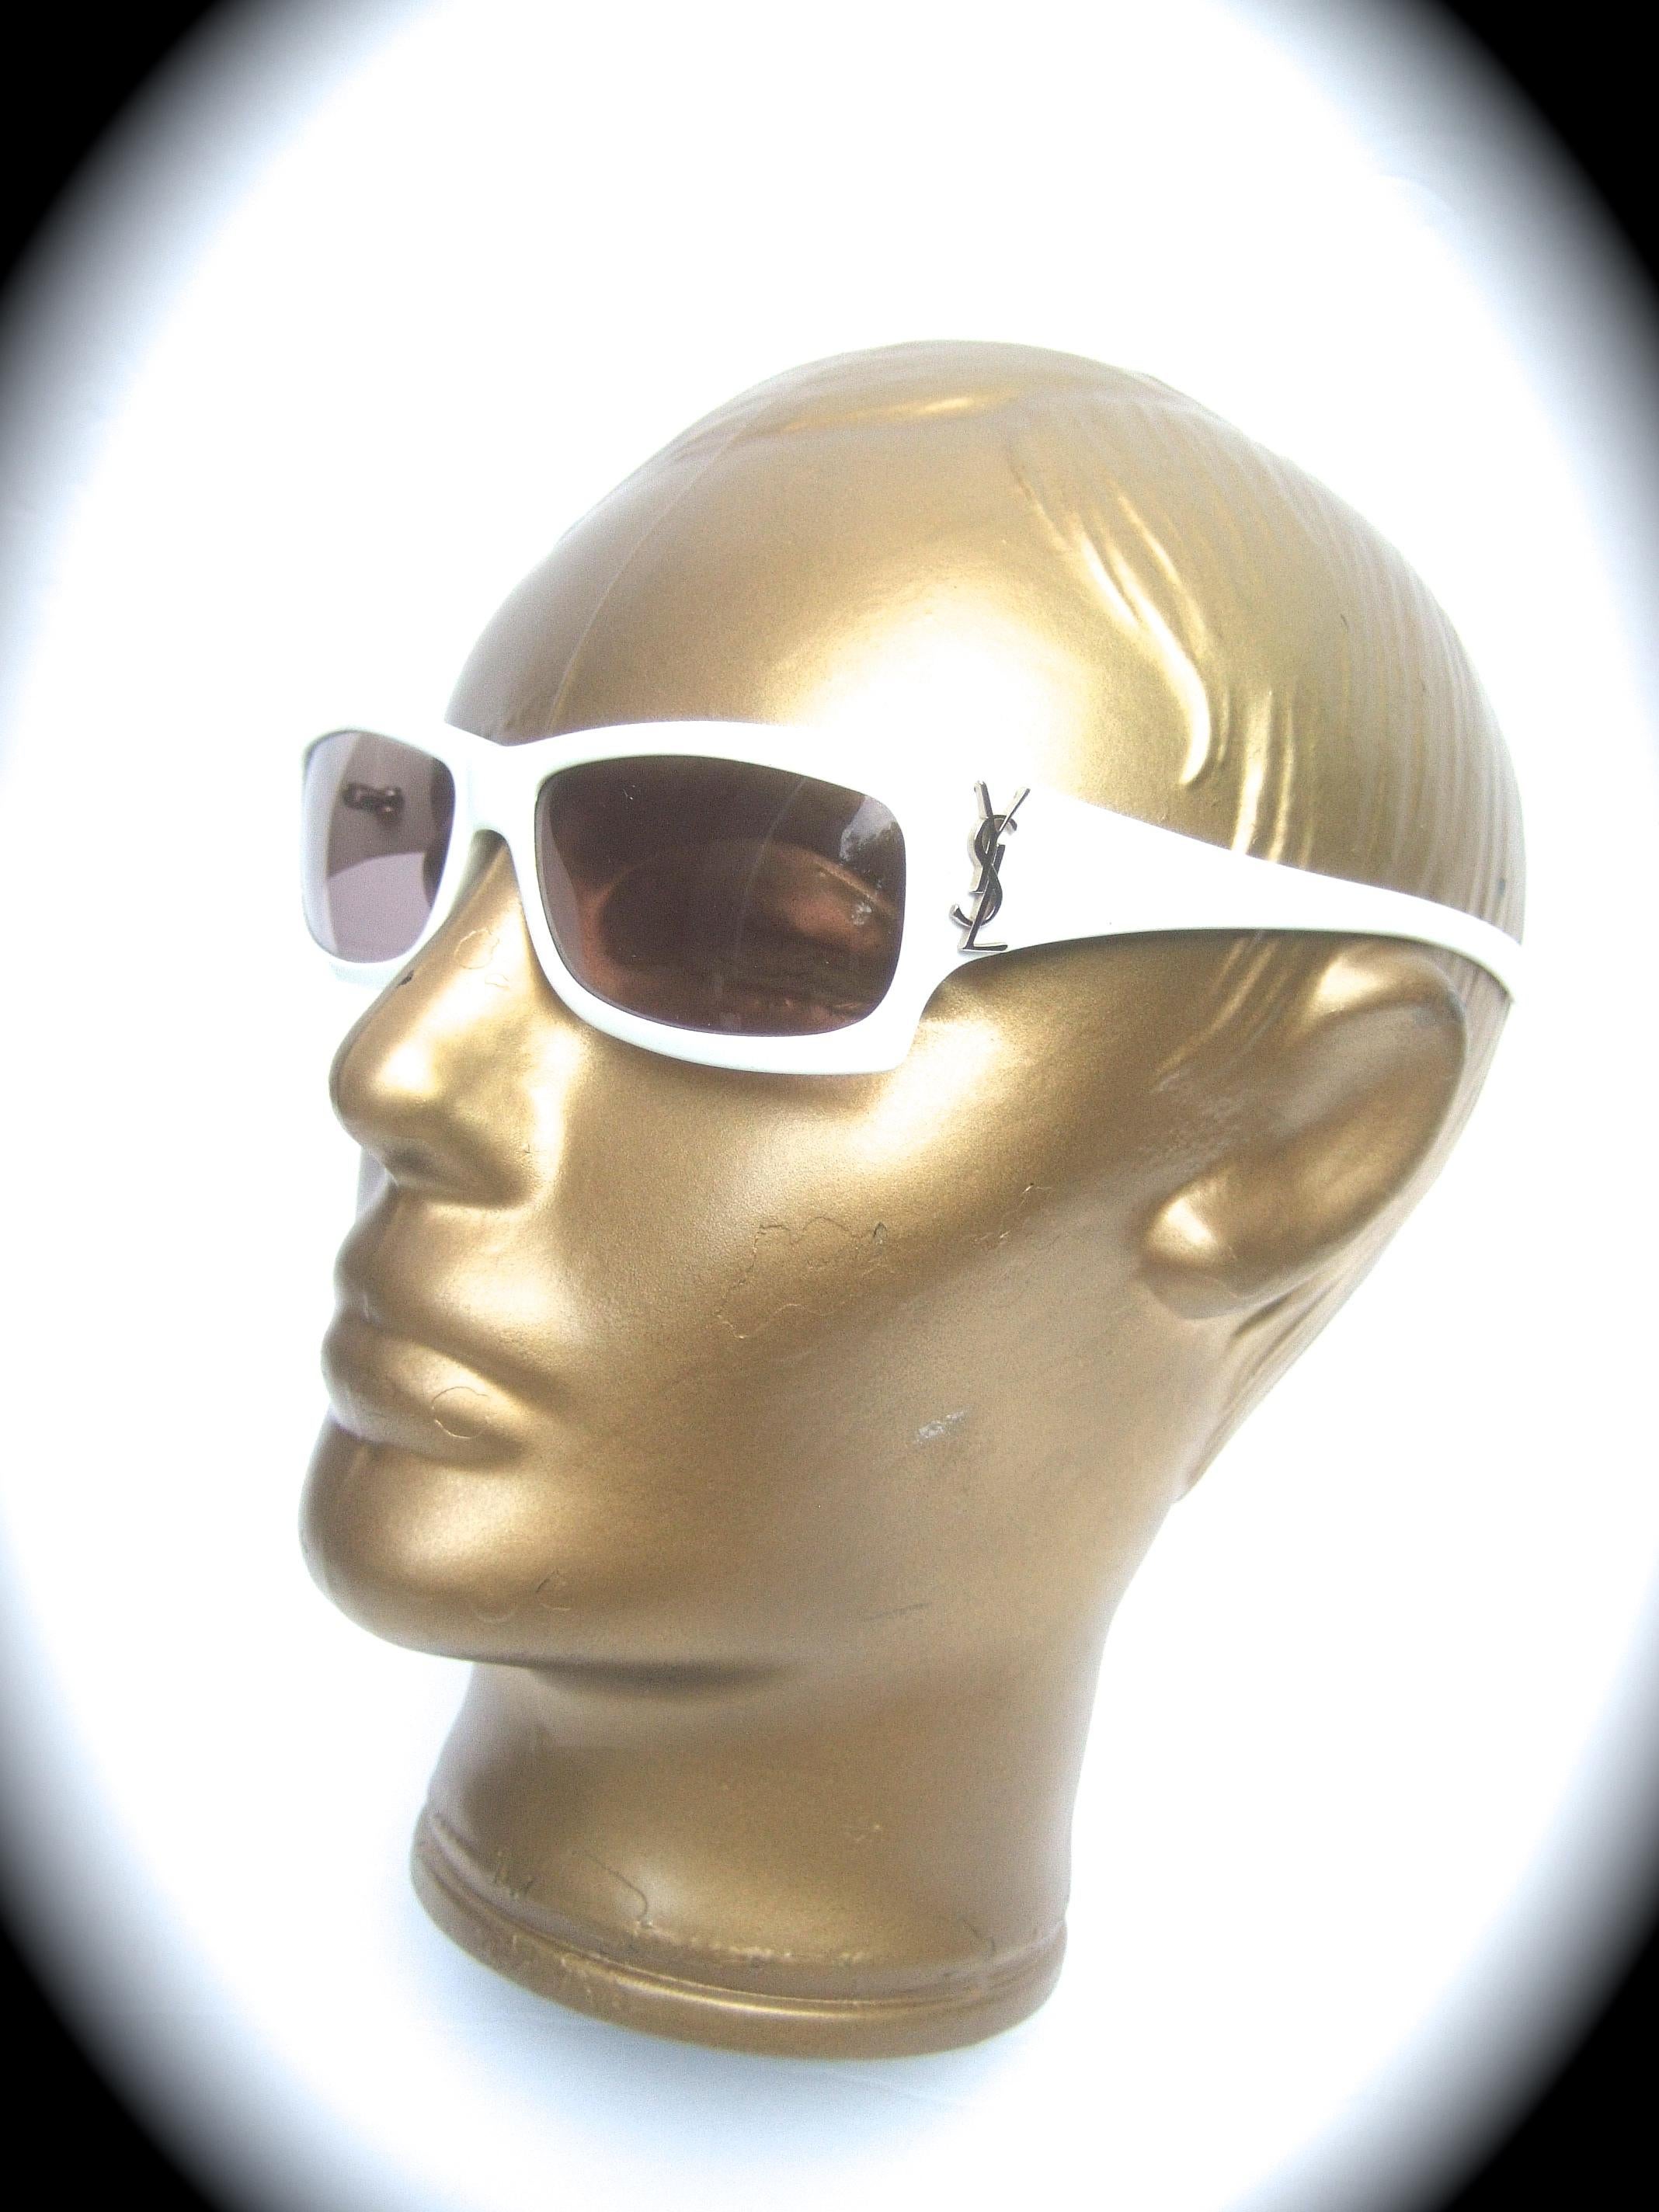 Yves Saint Laurent Italian White Plastic Frame Sunglasses in YSL Case c 1990s 9